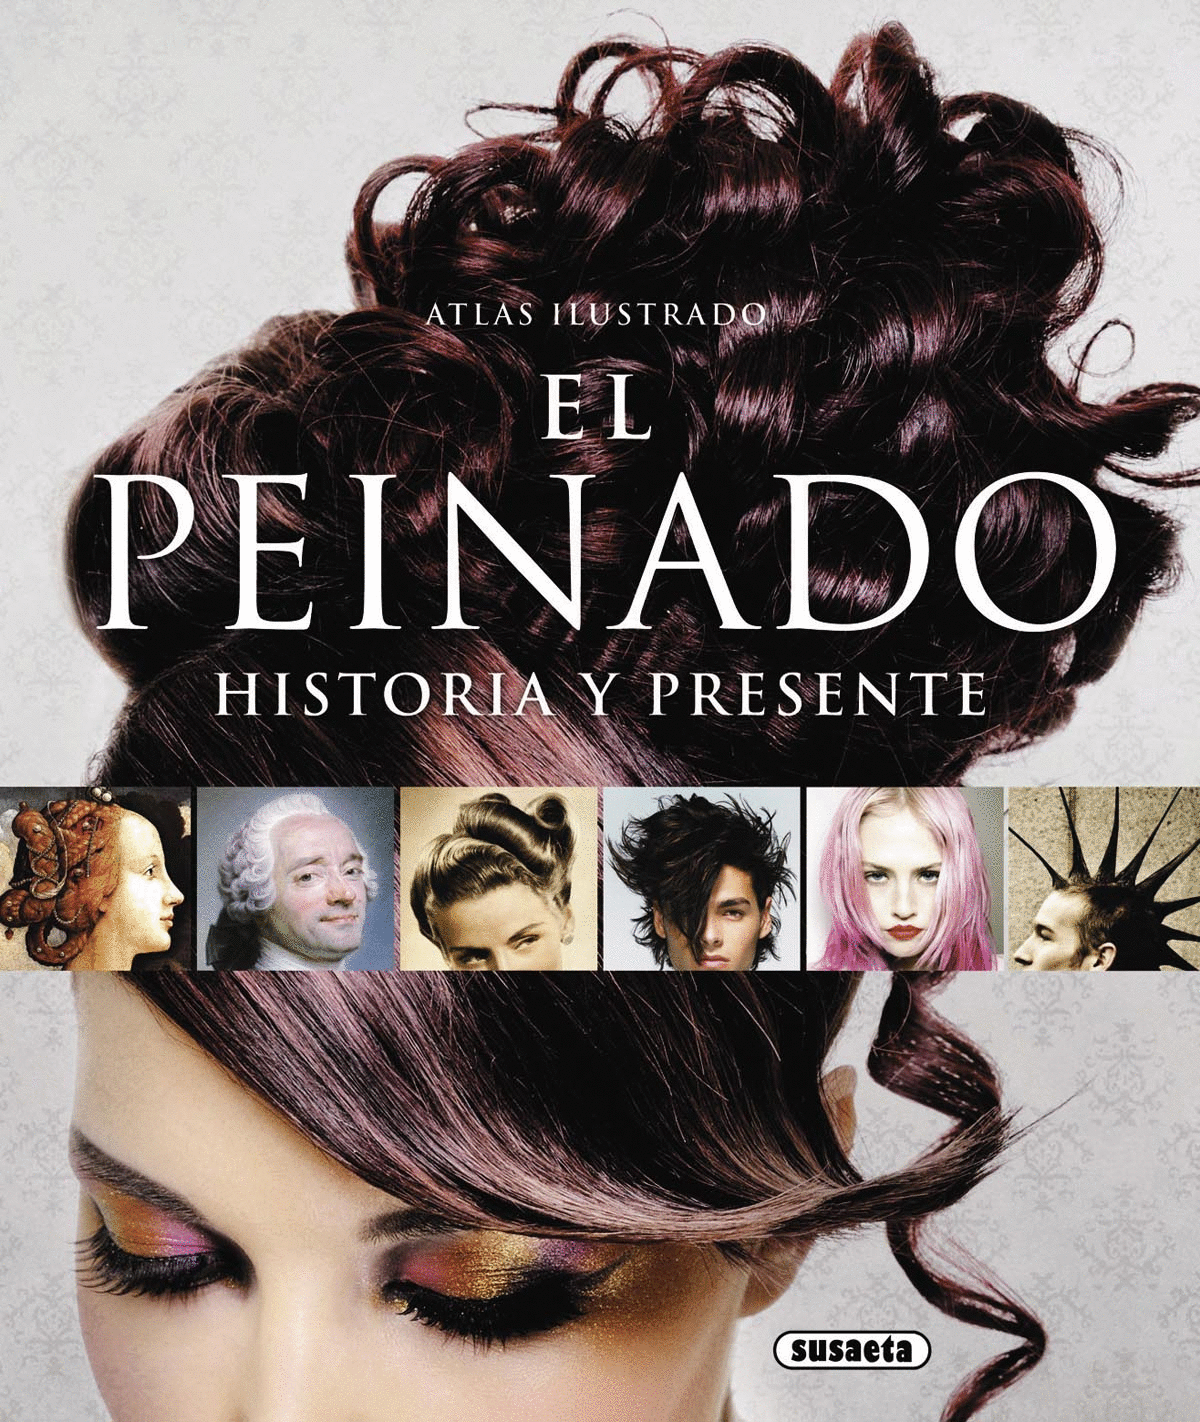 Peinado, El. Historia y presente. Galeano Pérez, Andrés. Libro en papel.  9788467722628 Cafebrería El Péndulo